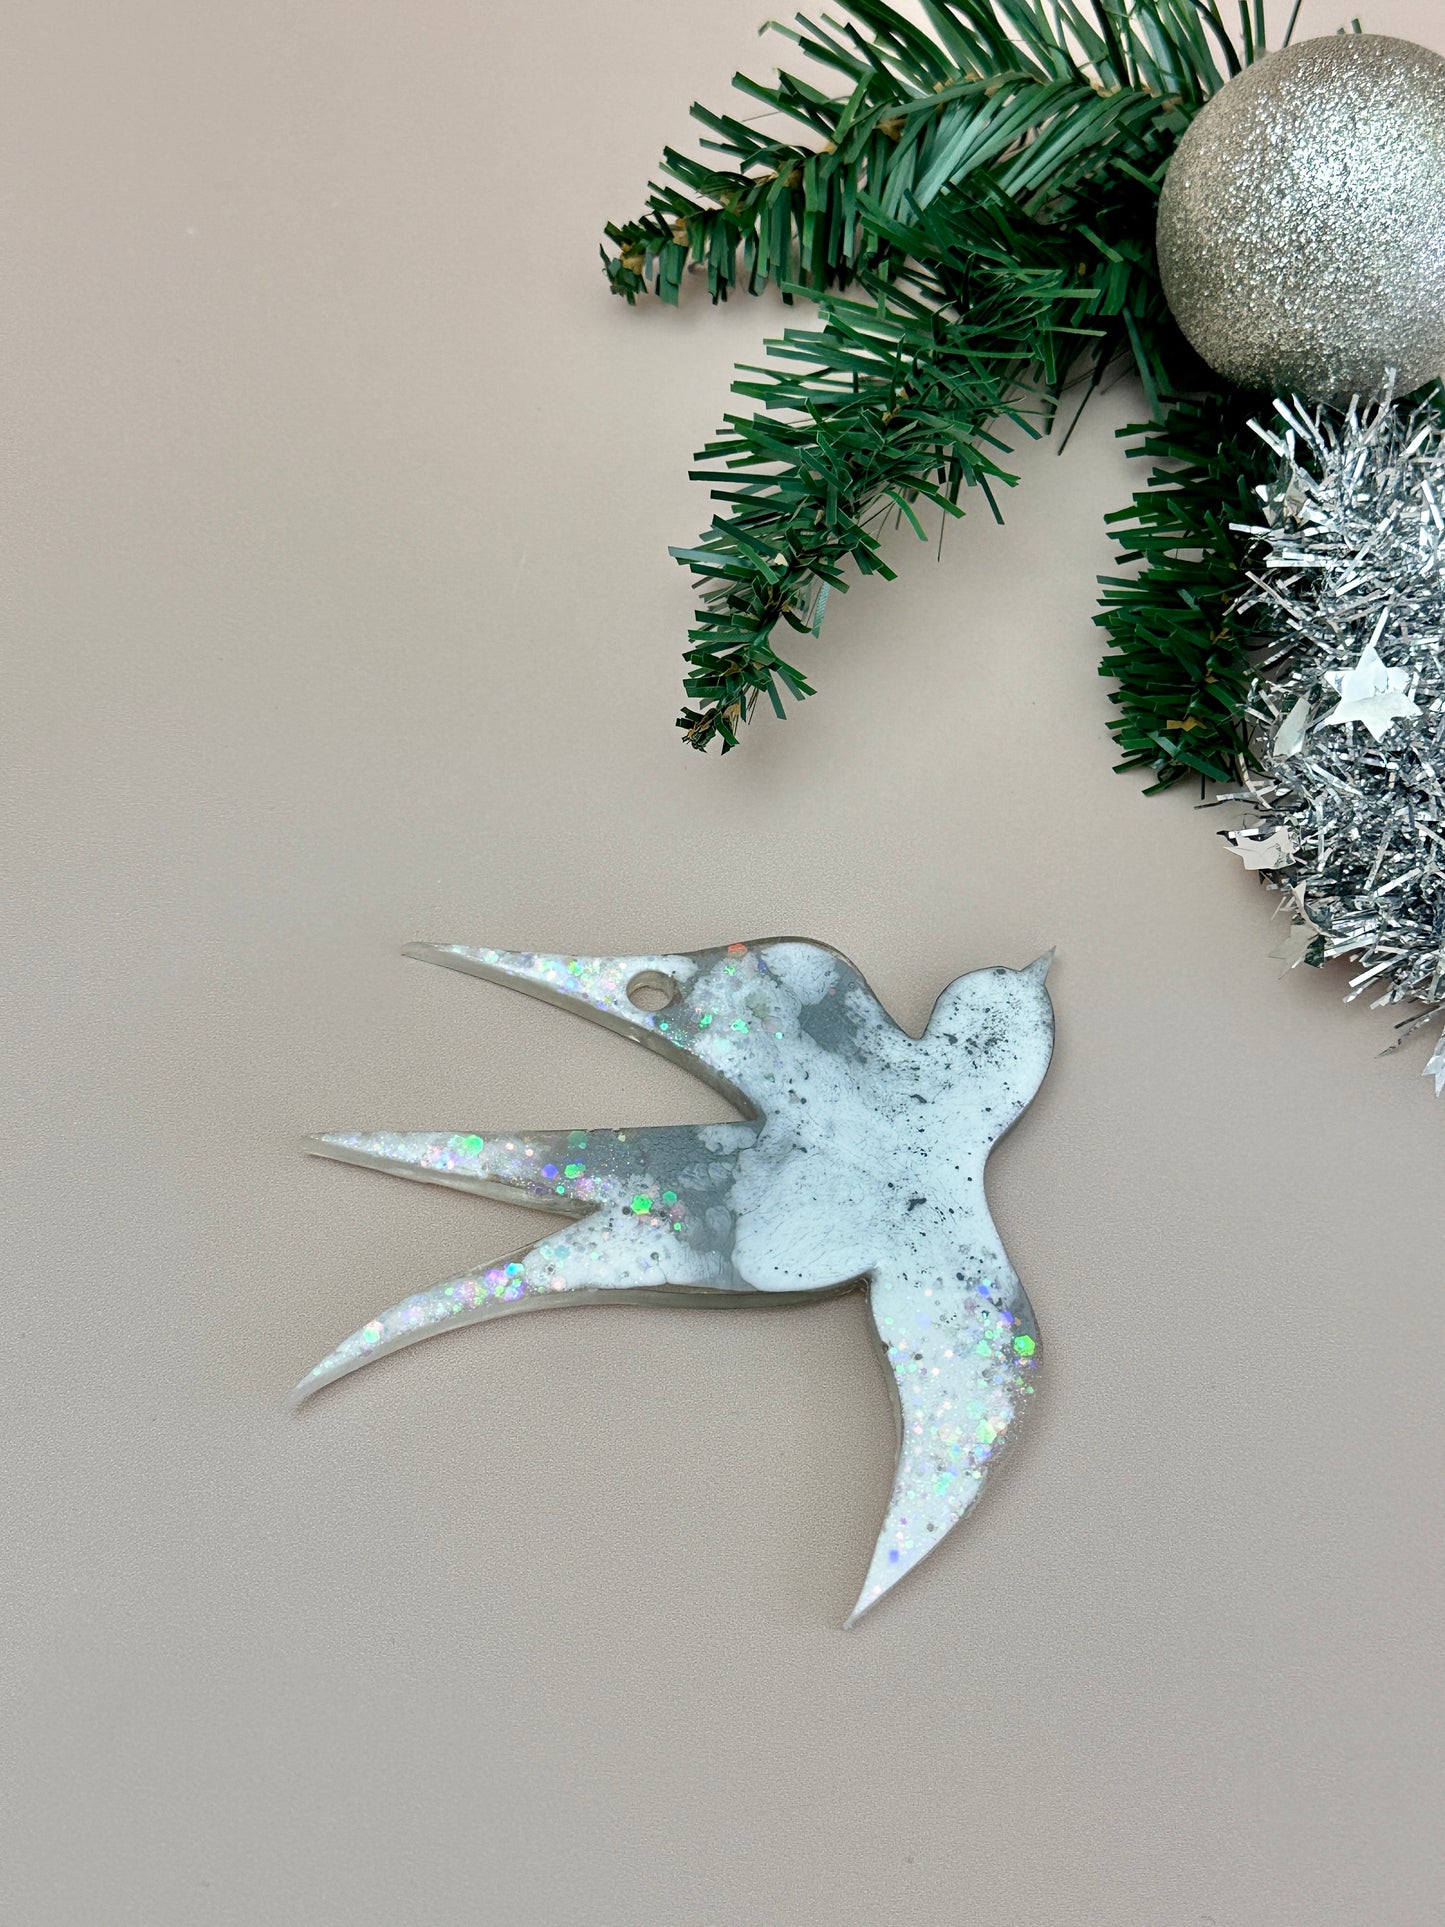 Schwalbenförmiger Weihnachtsbaumschmuck: Werten Sie Ihre Kunstharzkunst mit einer Silikonform auf